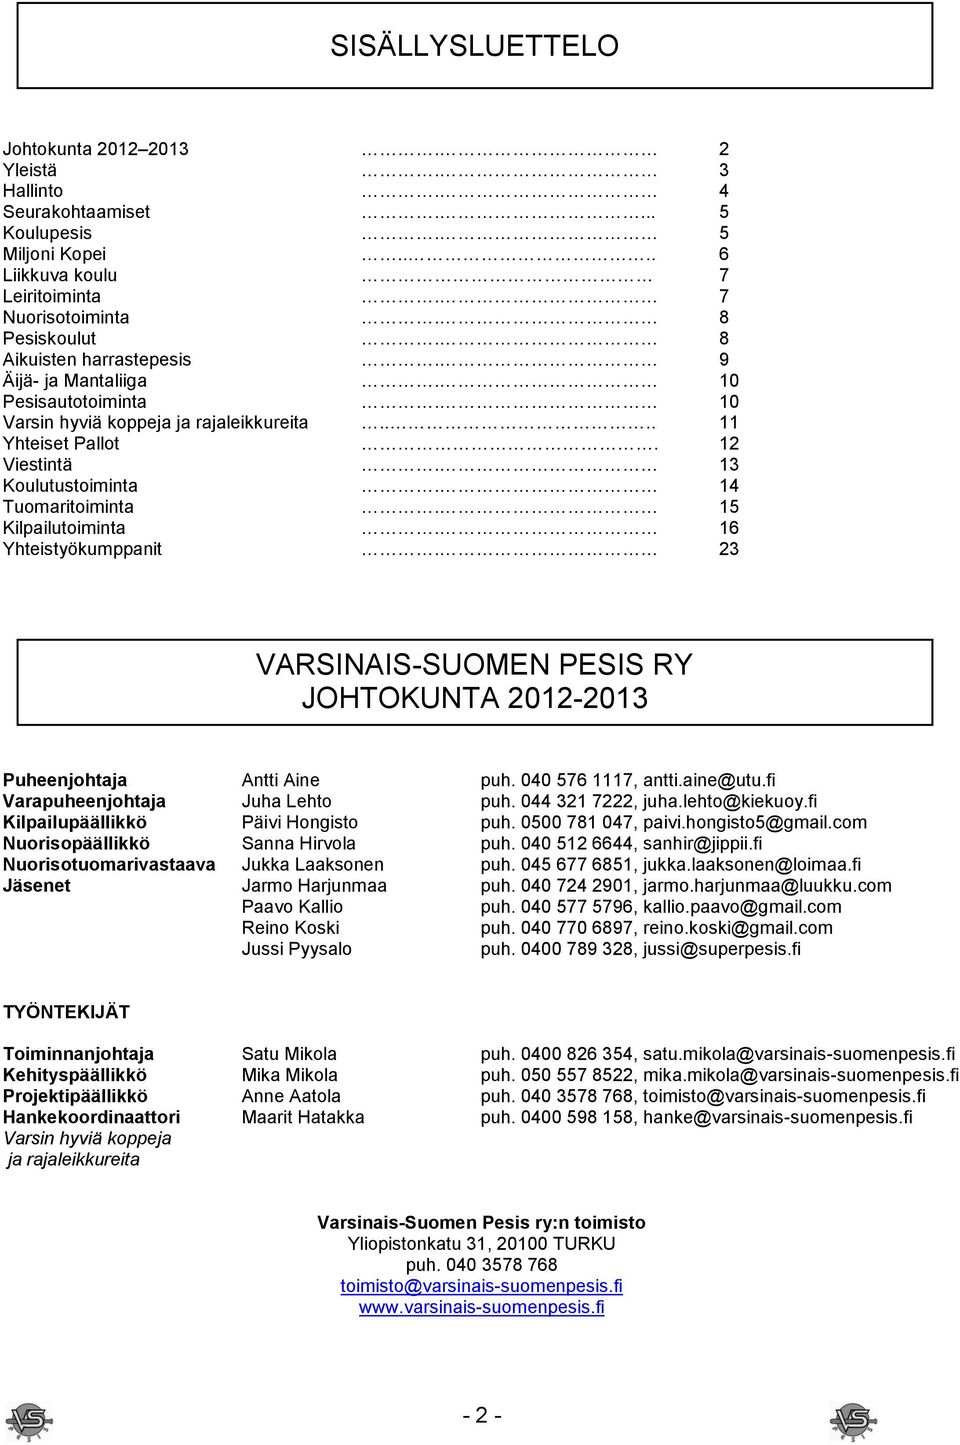 15 Kilpailutoiminta. 16 Yhteistyökumppanit. 23 VARSINAIS-SUOMEN PESIS RY JOHTOKUNTA 2012-2013 Puheenjohtaja Antti Aine puh. 040 576 1117, antti.aine@utu.fi Varapuheenjohtaja Juha Lehto puh.